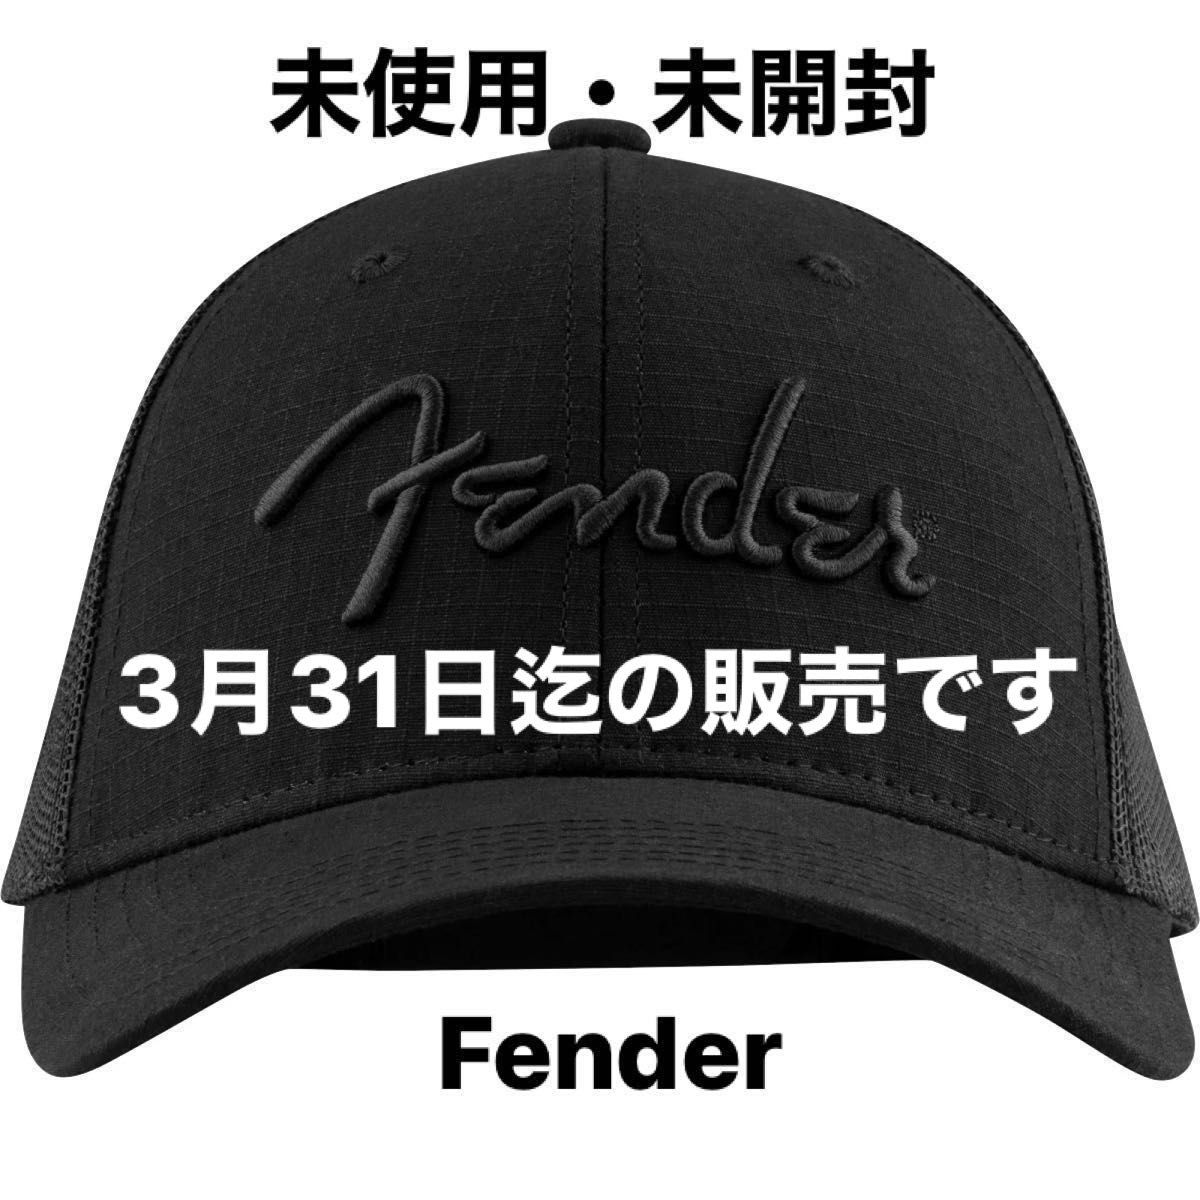 Fender Snap Back Pick Holder Hat Black フェンダー キャップ  スナップバック フリーサイズ